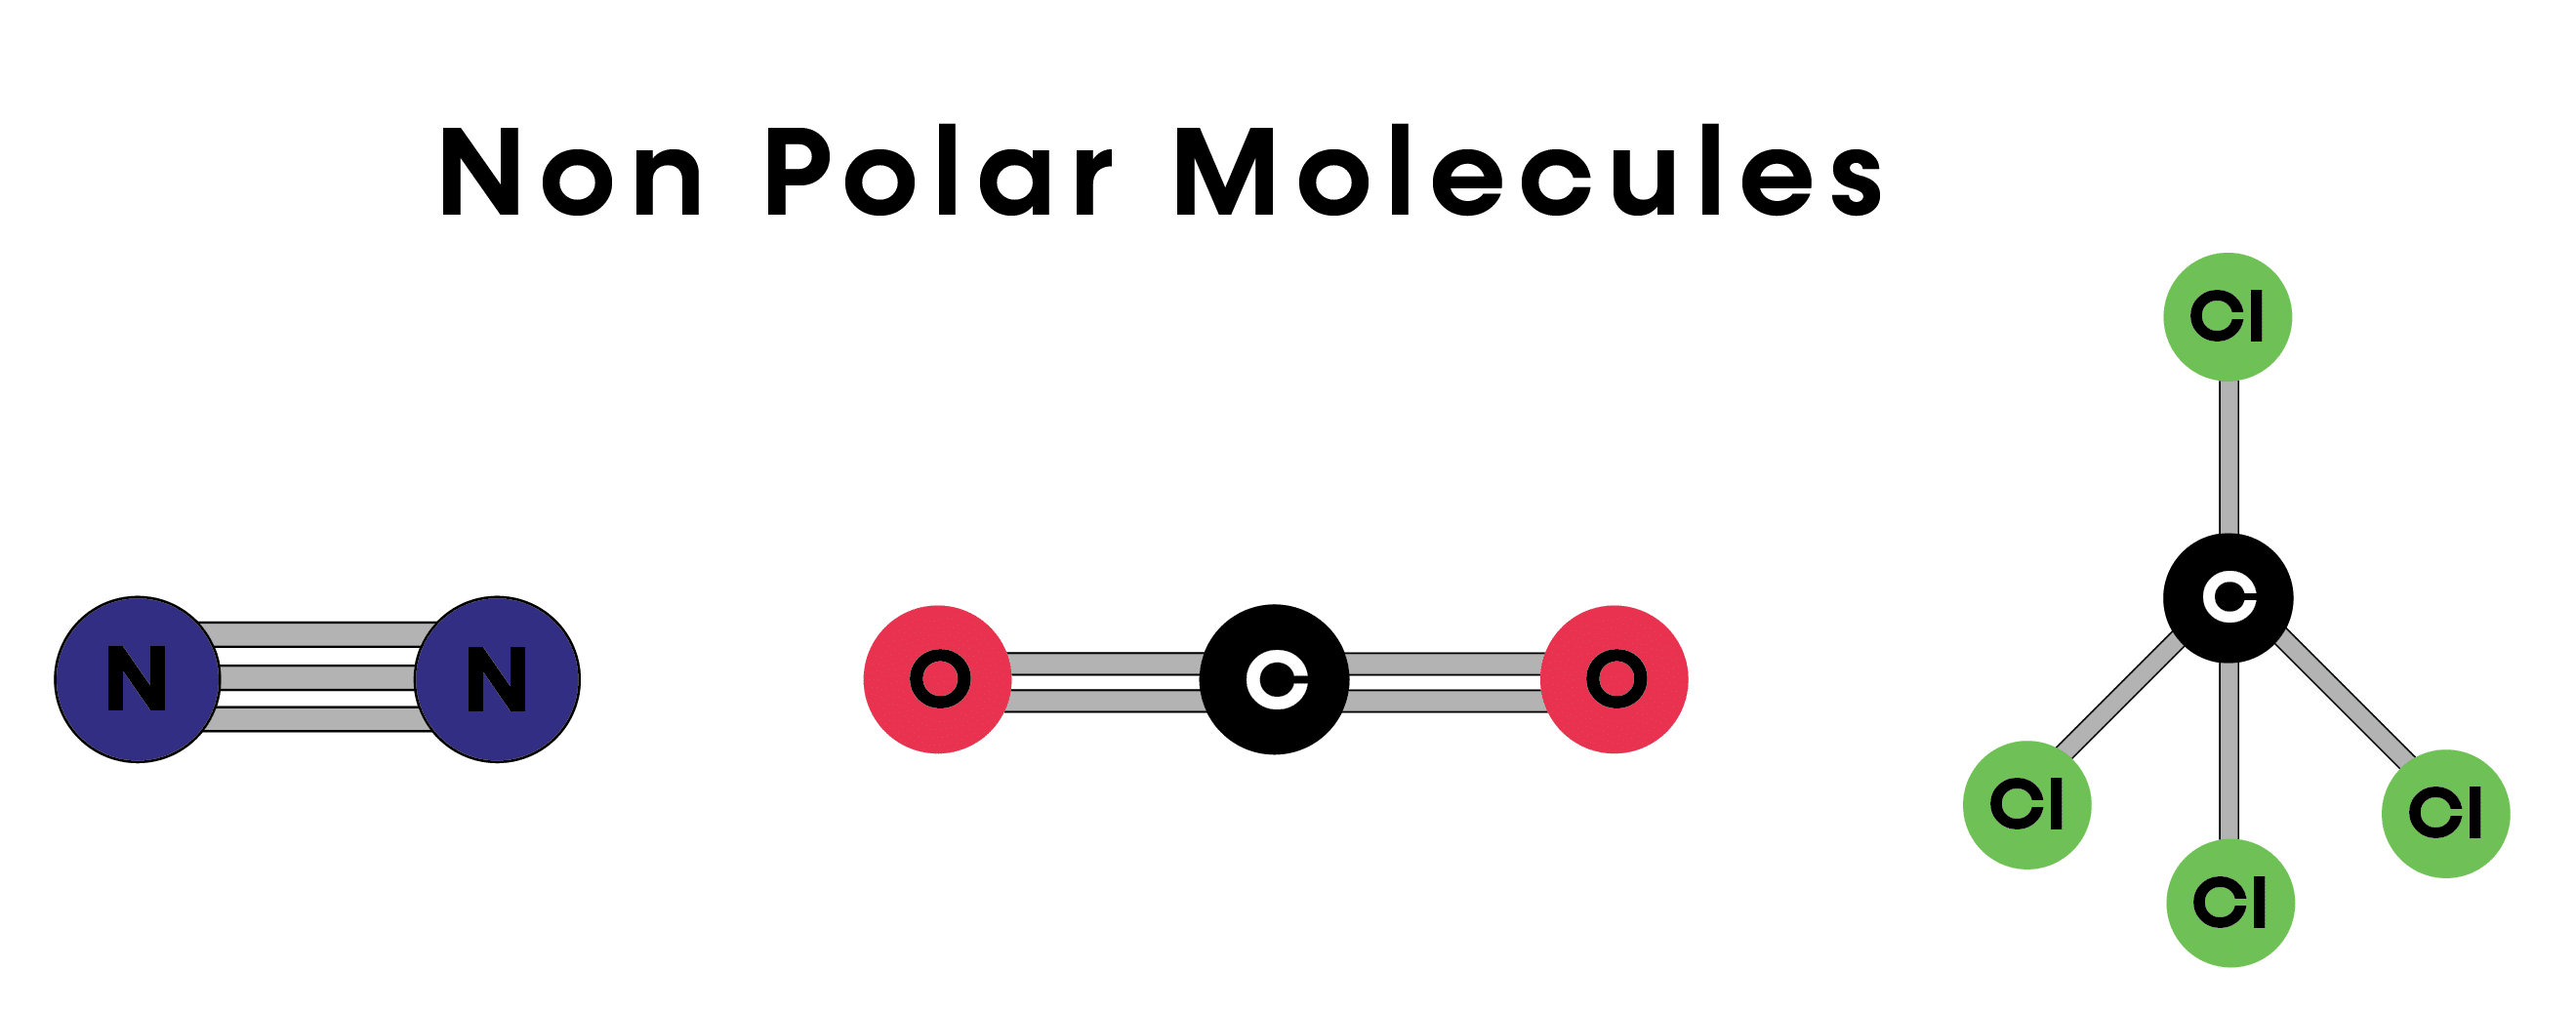 nonpolar molecule